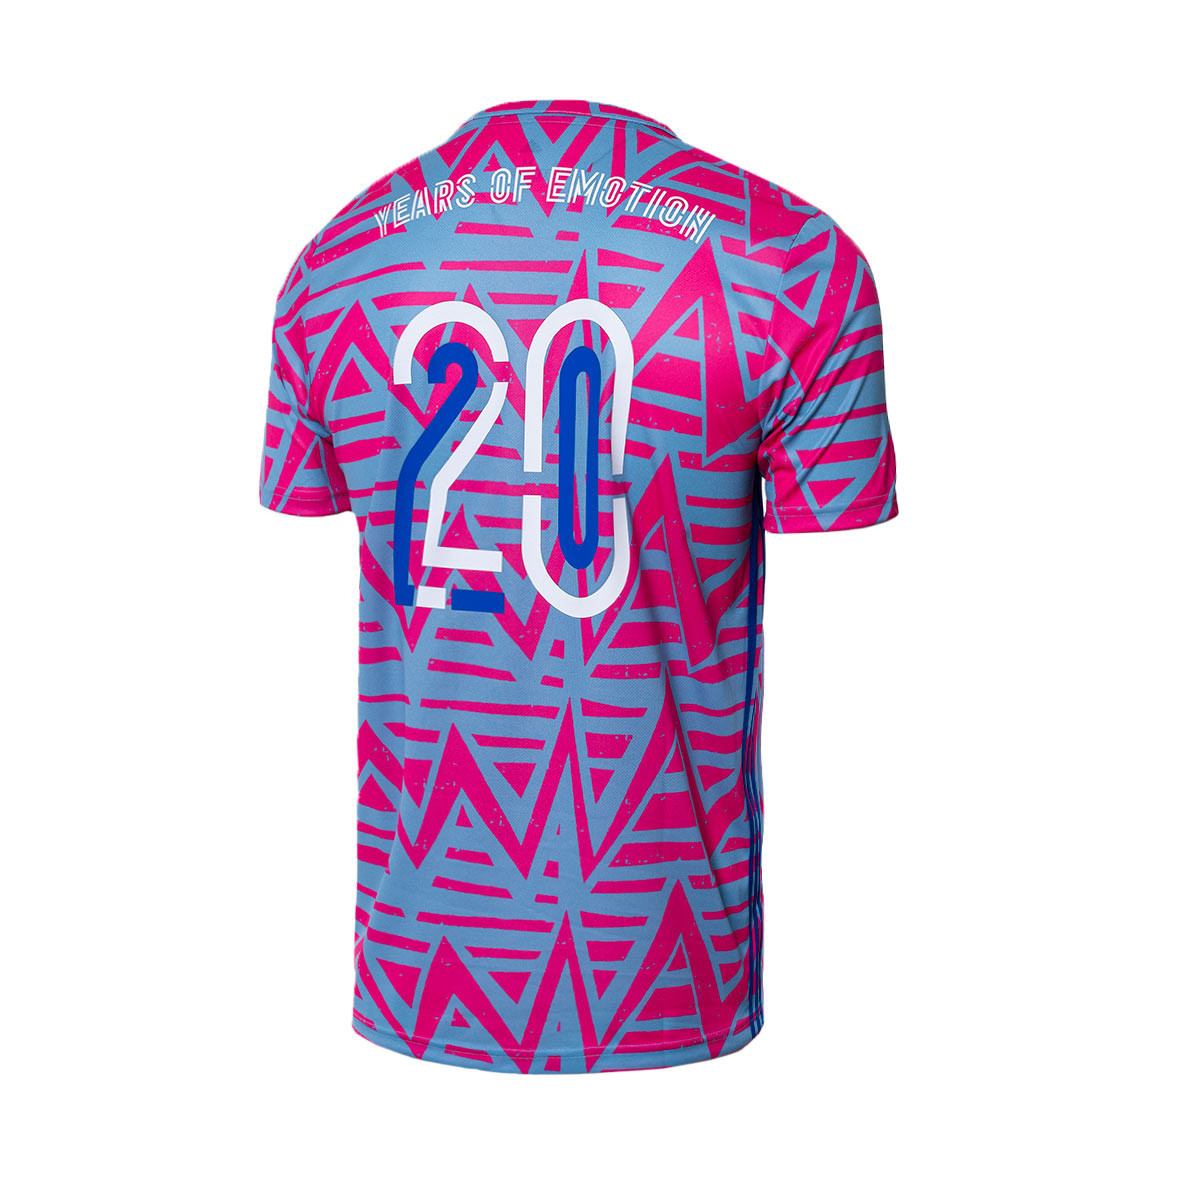 Camiseta adidas are lovers 20 aniversario Fútbol Emotion Light Blue-Shock Pink - Fútbol Emotion